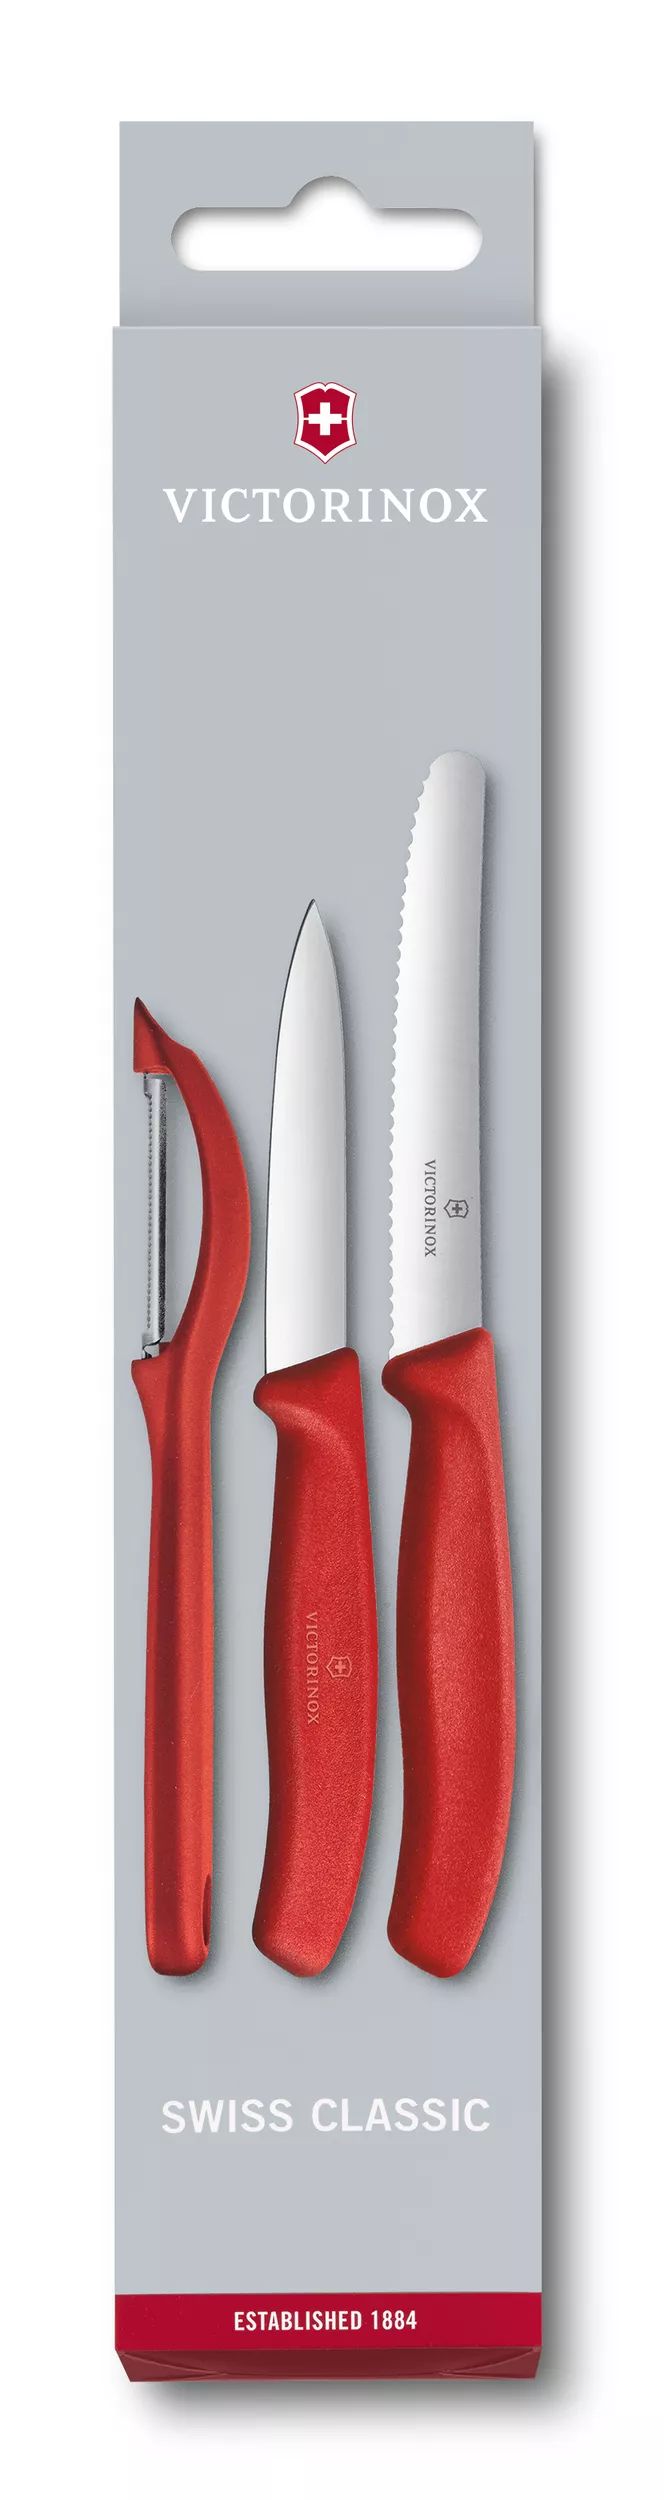 Swiss Classic 削皮刀具組與削皮器，3件裝-6.7111.31